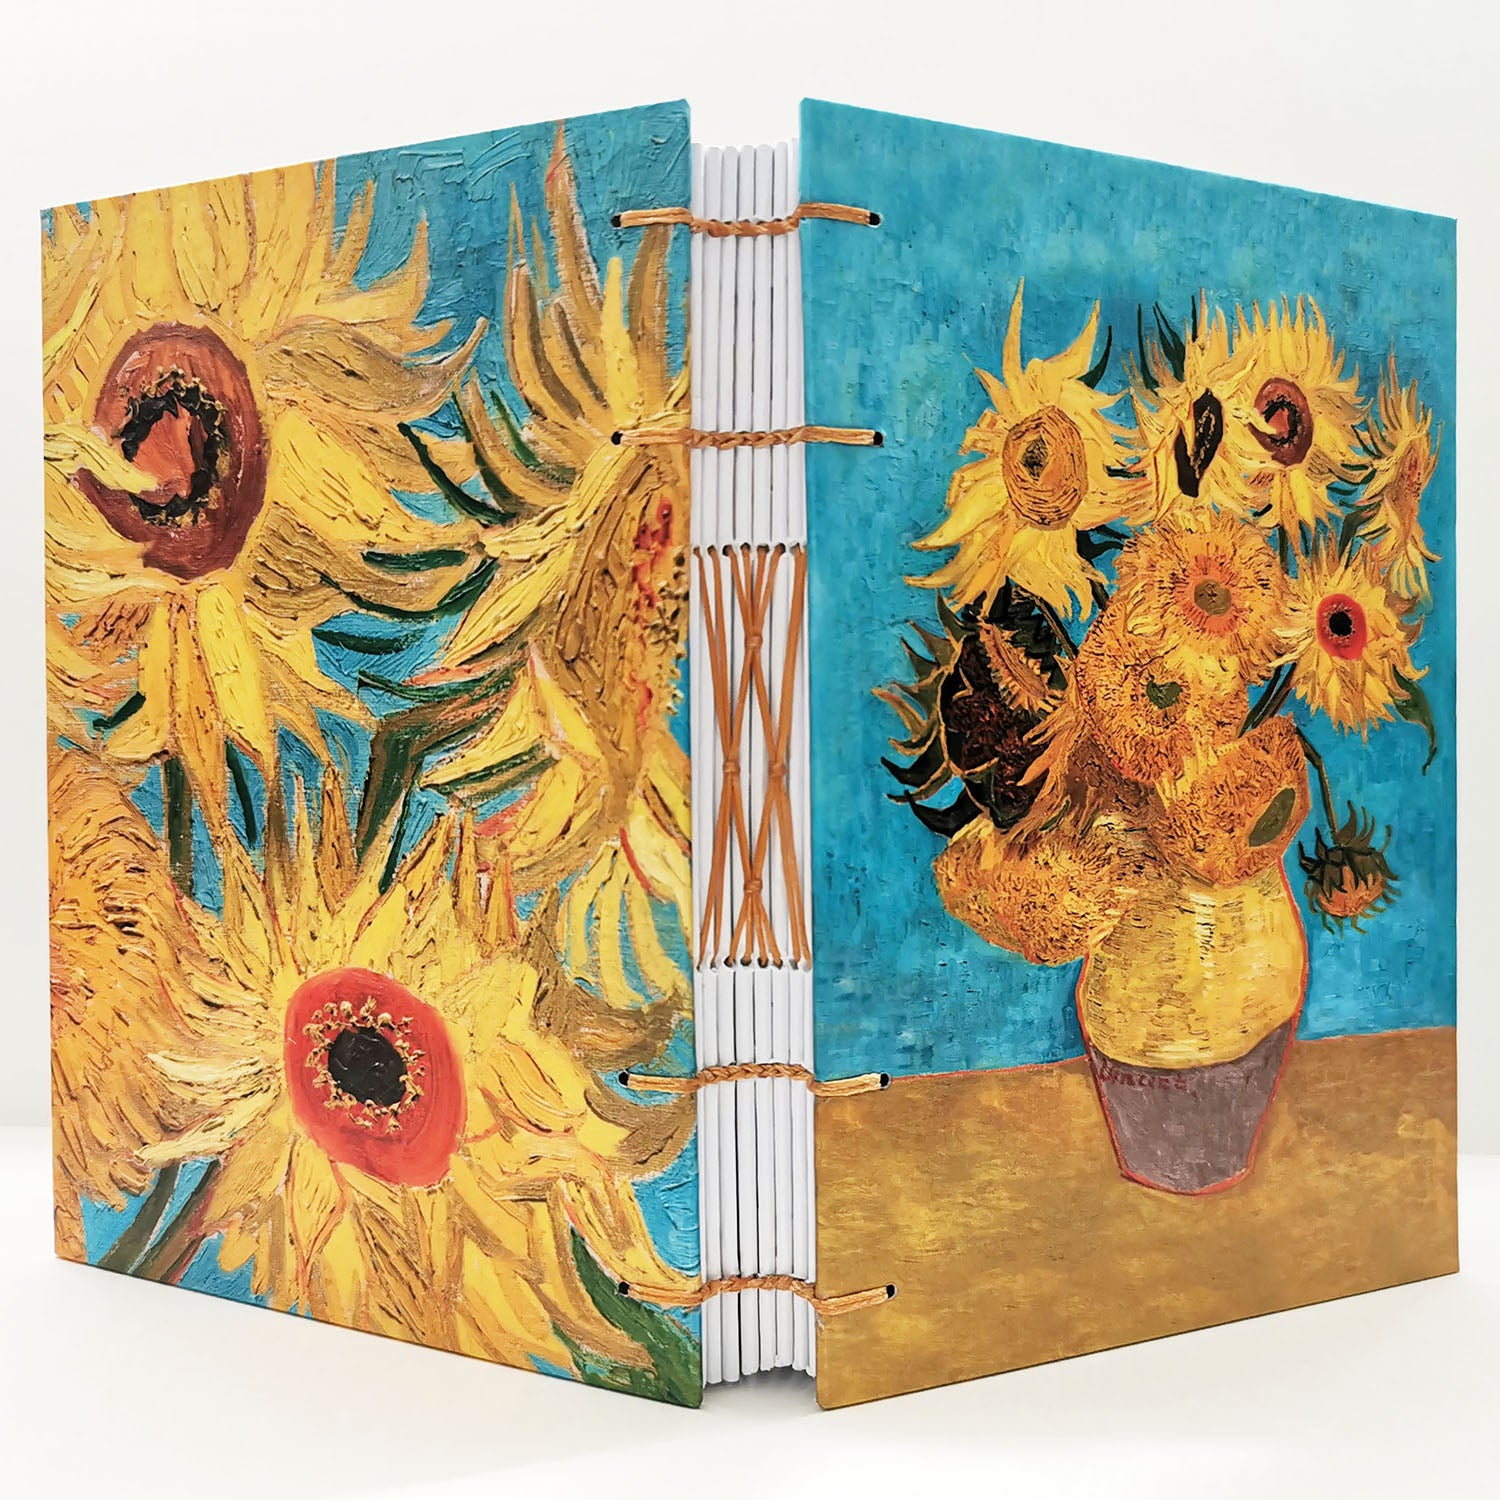 Χειροποίητo Σημειωματάριo με Βυζαντινή Βιβλιοδεσία - Vincent van Gogh - Vase with twelve sunflowers